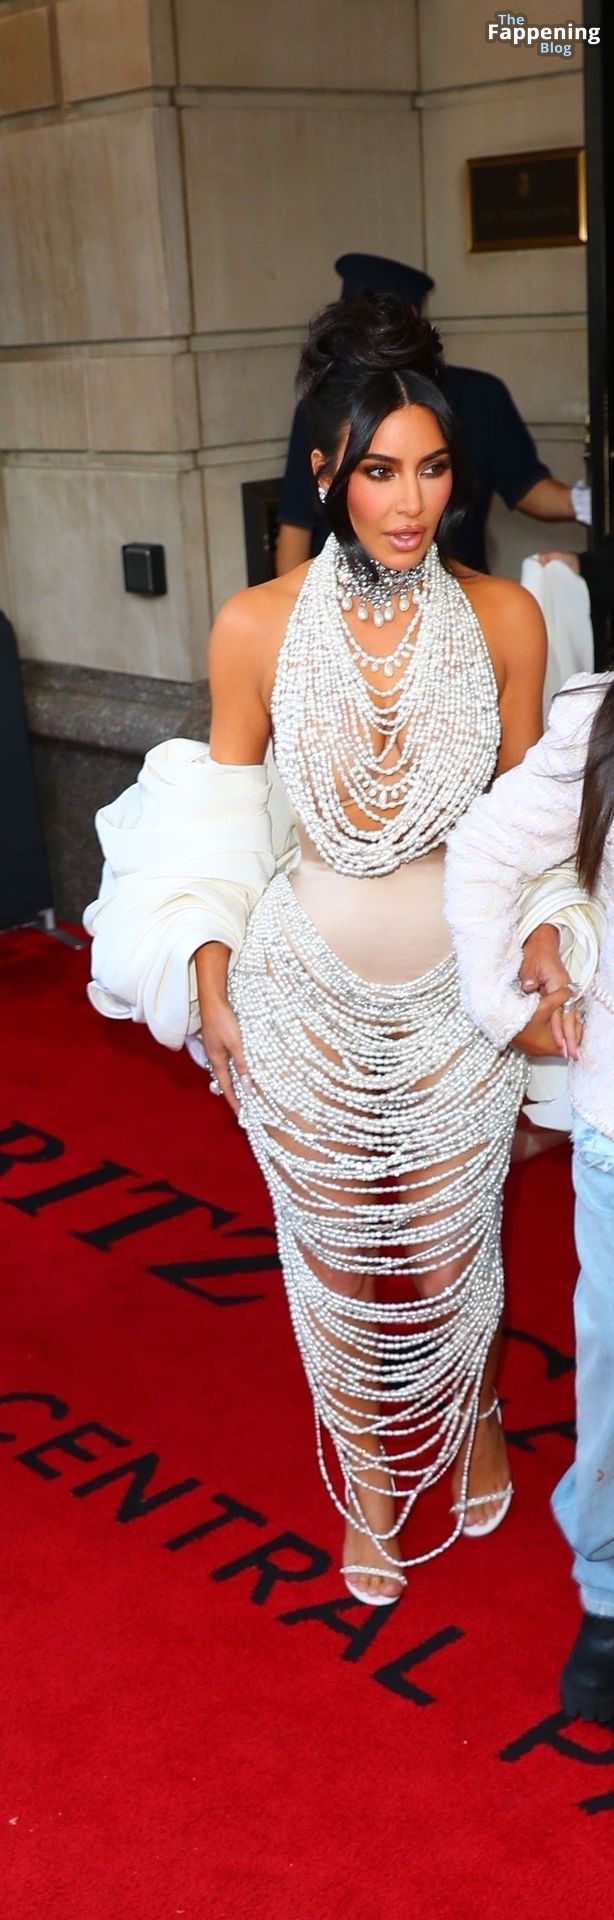 Kim-Kardashian-Sexy-The-Fappening-Blog-135.jpg